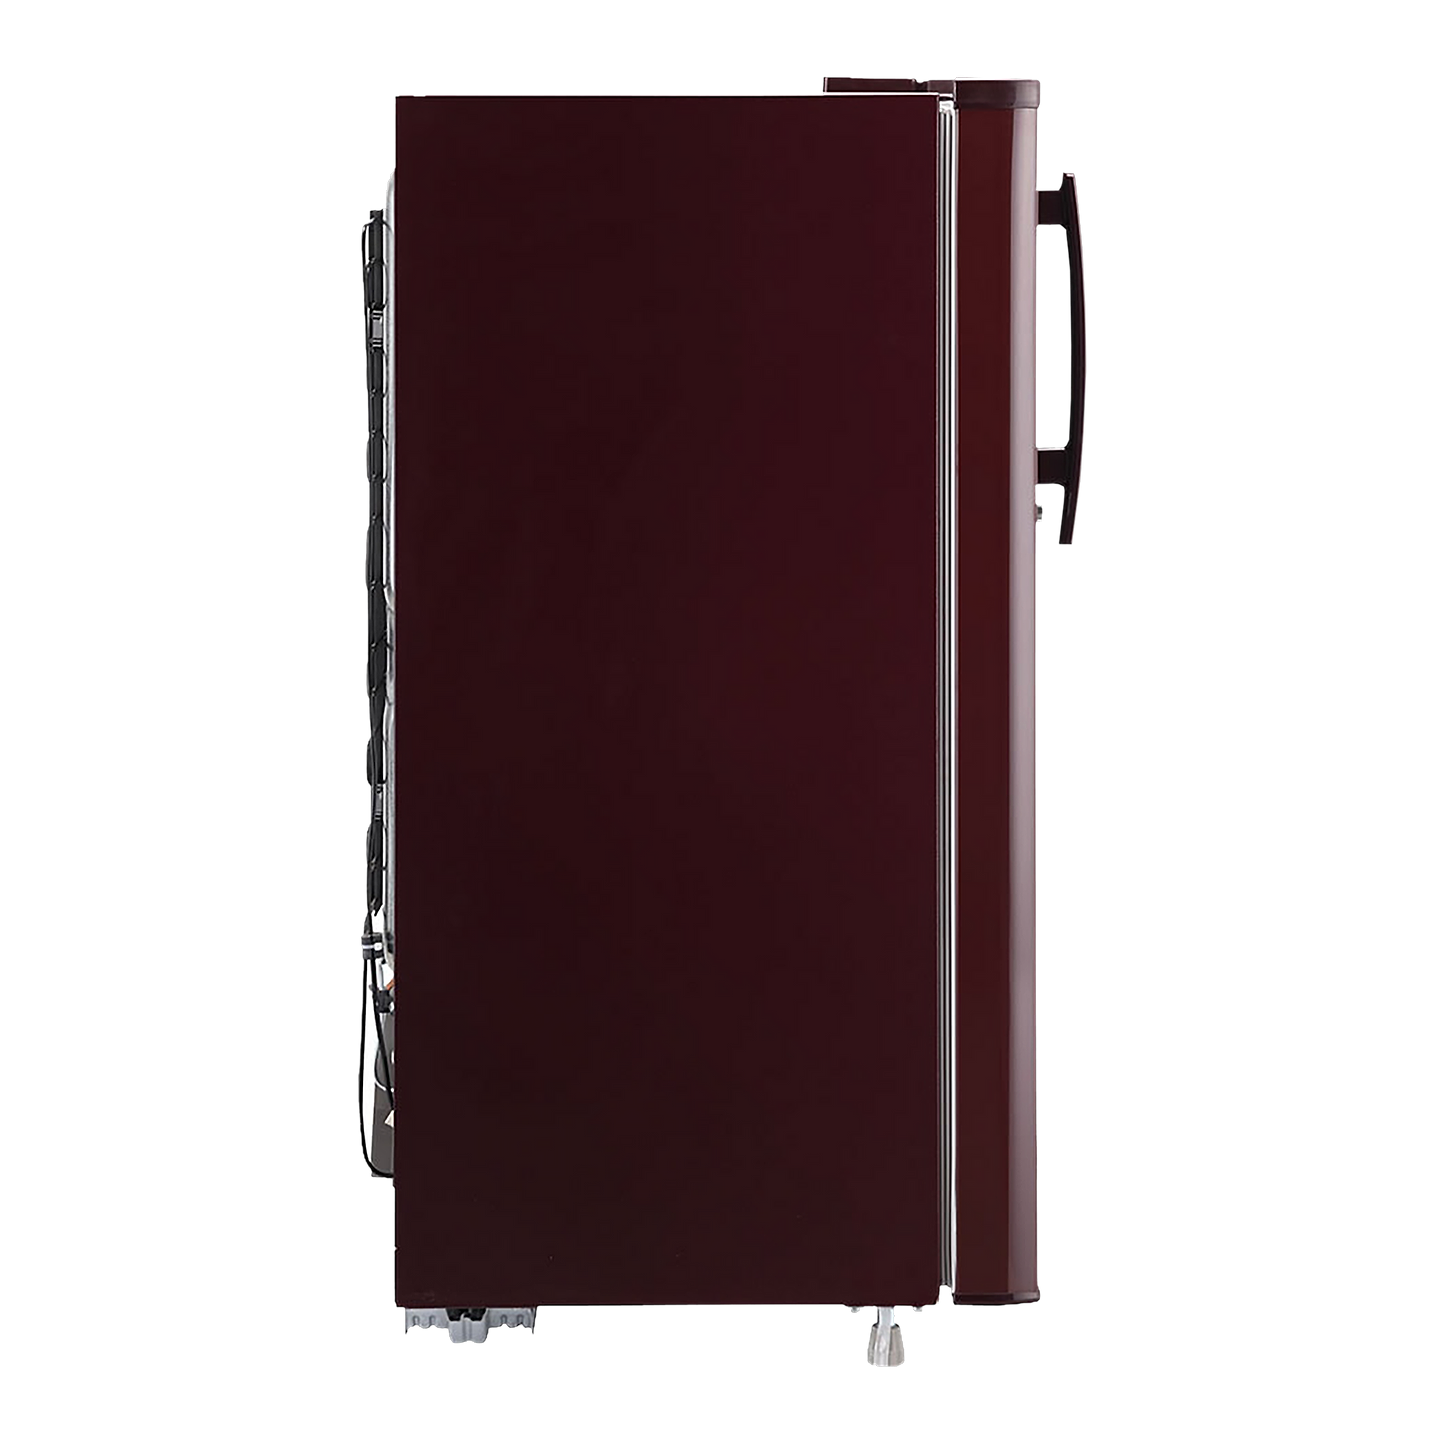 GL-B199GSJB-LG 185 L Direct Cool Single Door 1 Star Refrigerator